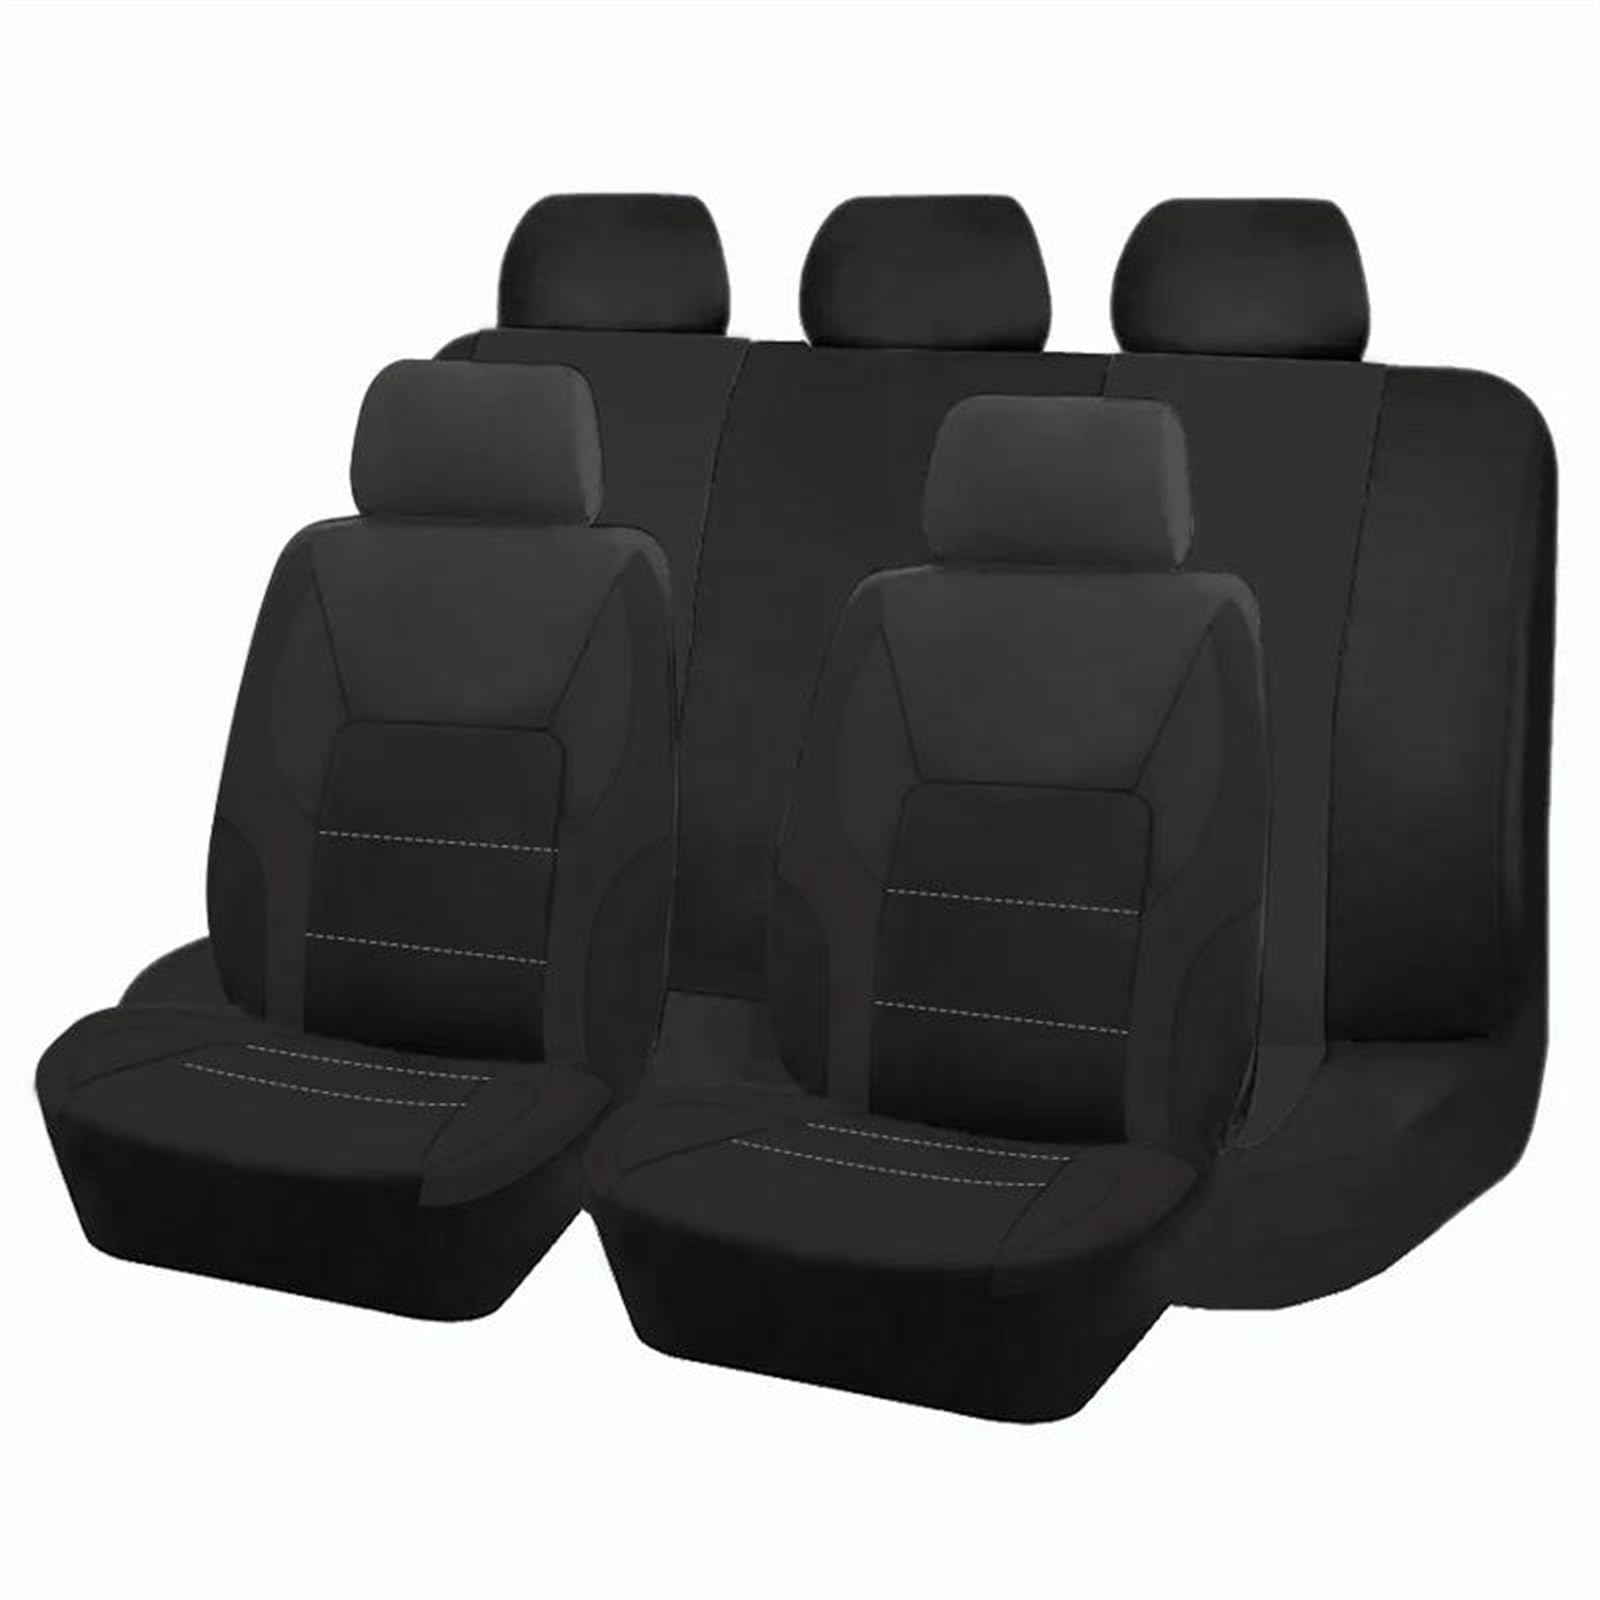 DZSQOSJB SitzbezüGe Auto Universelle Autositzbezüge Aus Stoff Mit Airbag-kompatiblem 2-mm-Schwamm Für Die Meisten Auto-SUV-LKW-Van Vordersitze(Black 5 seat) von DZSQOSJB